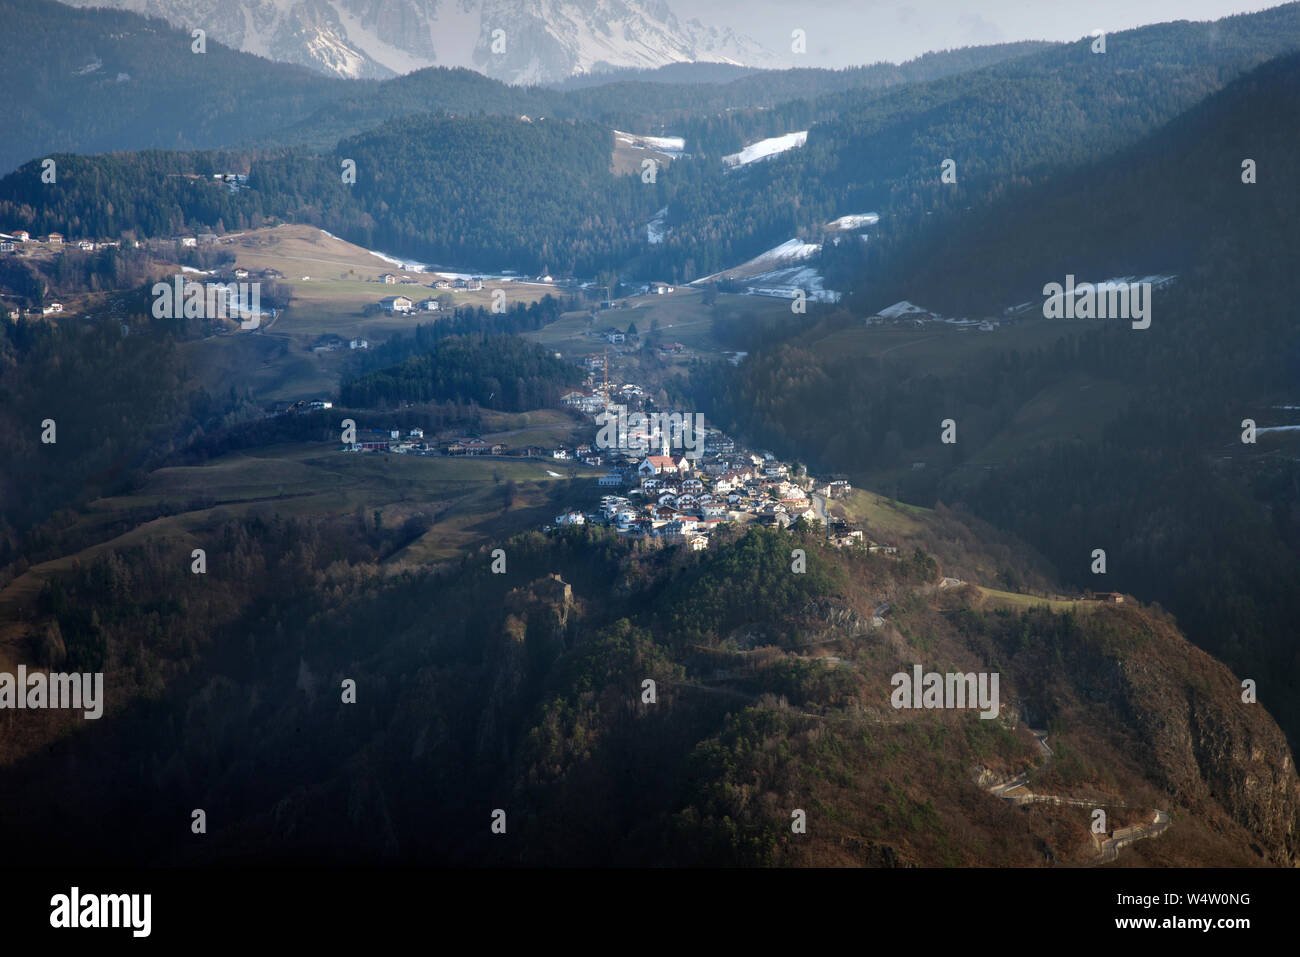 The small village of Presule, near Bolzano, Italy Stock Photo